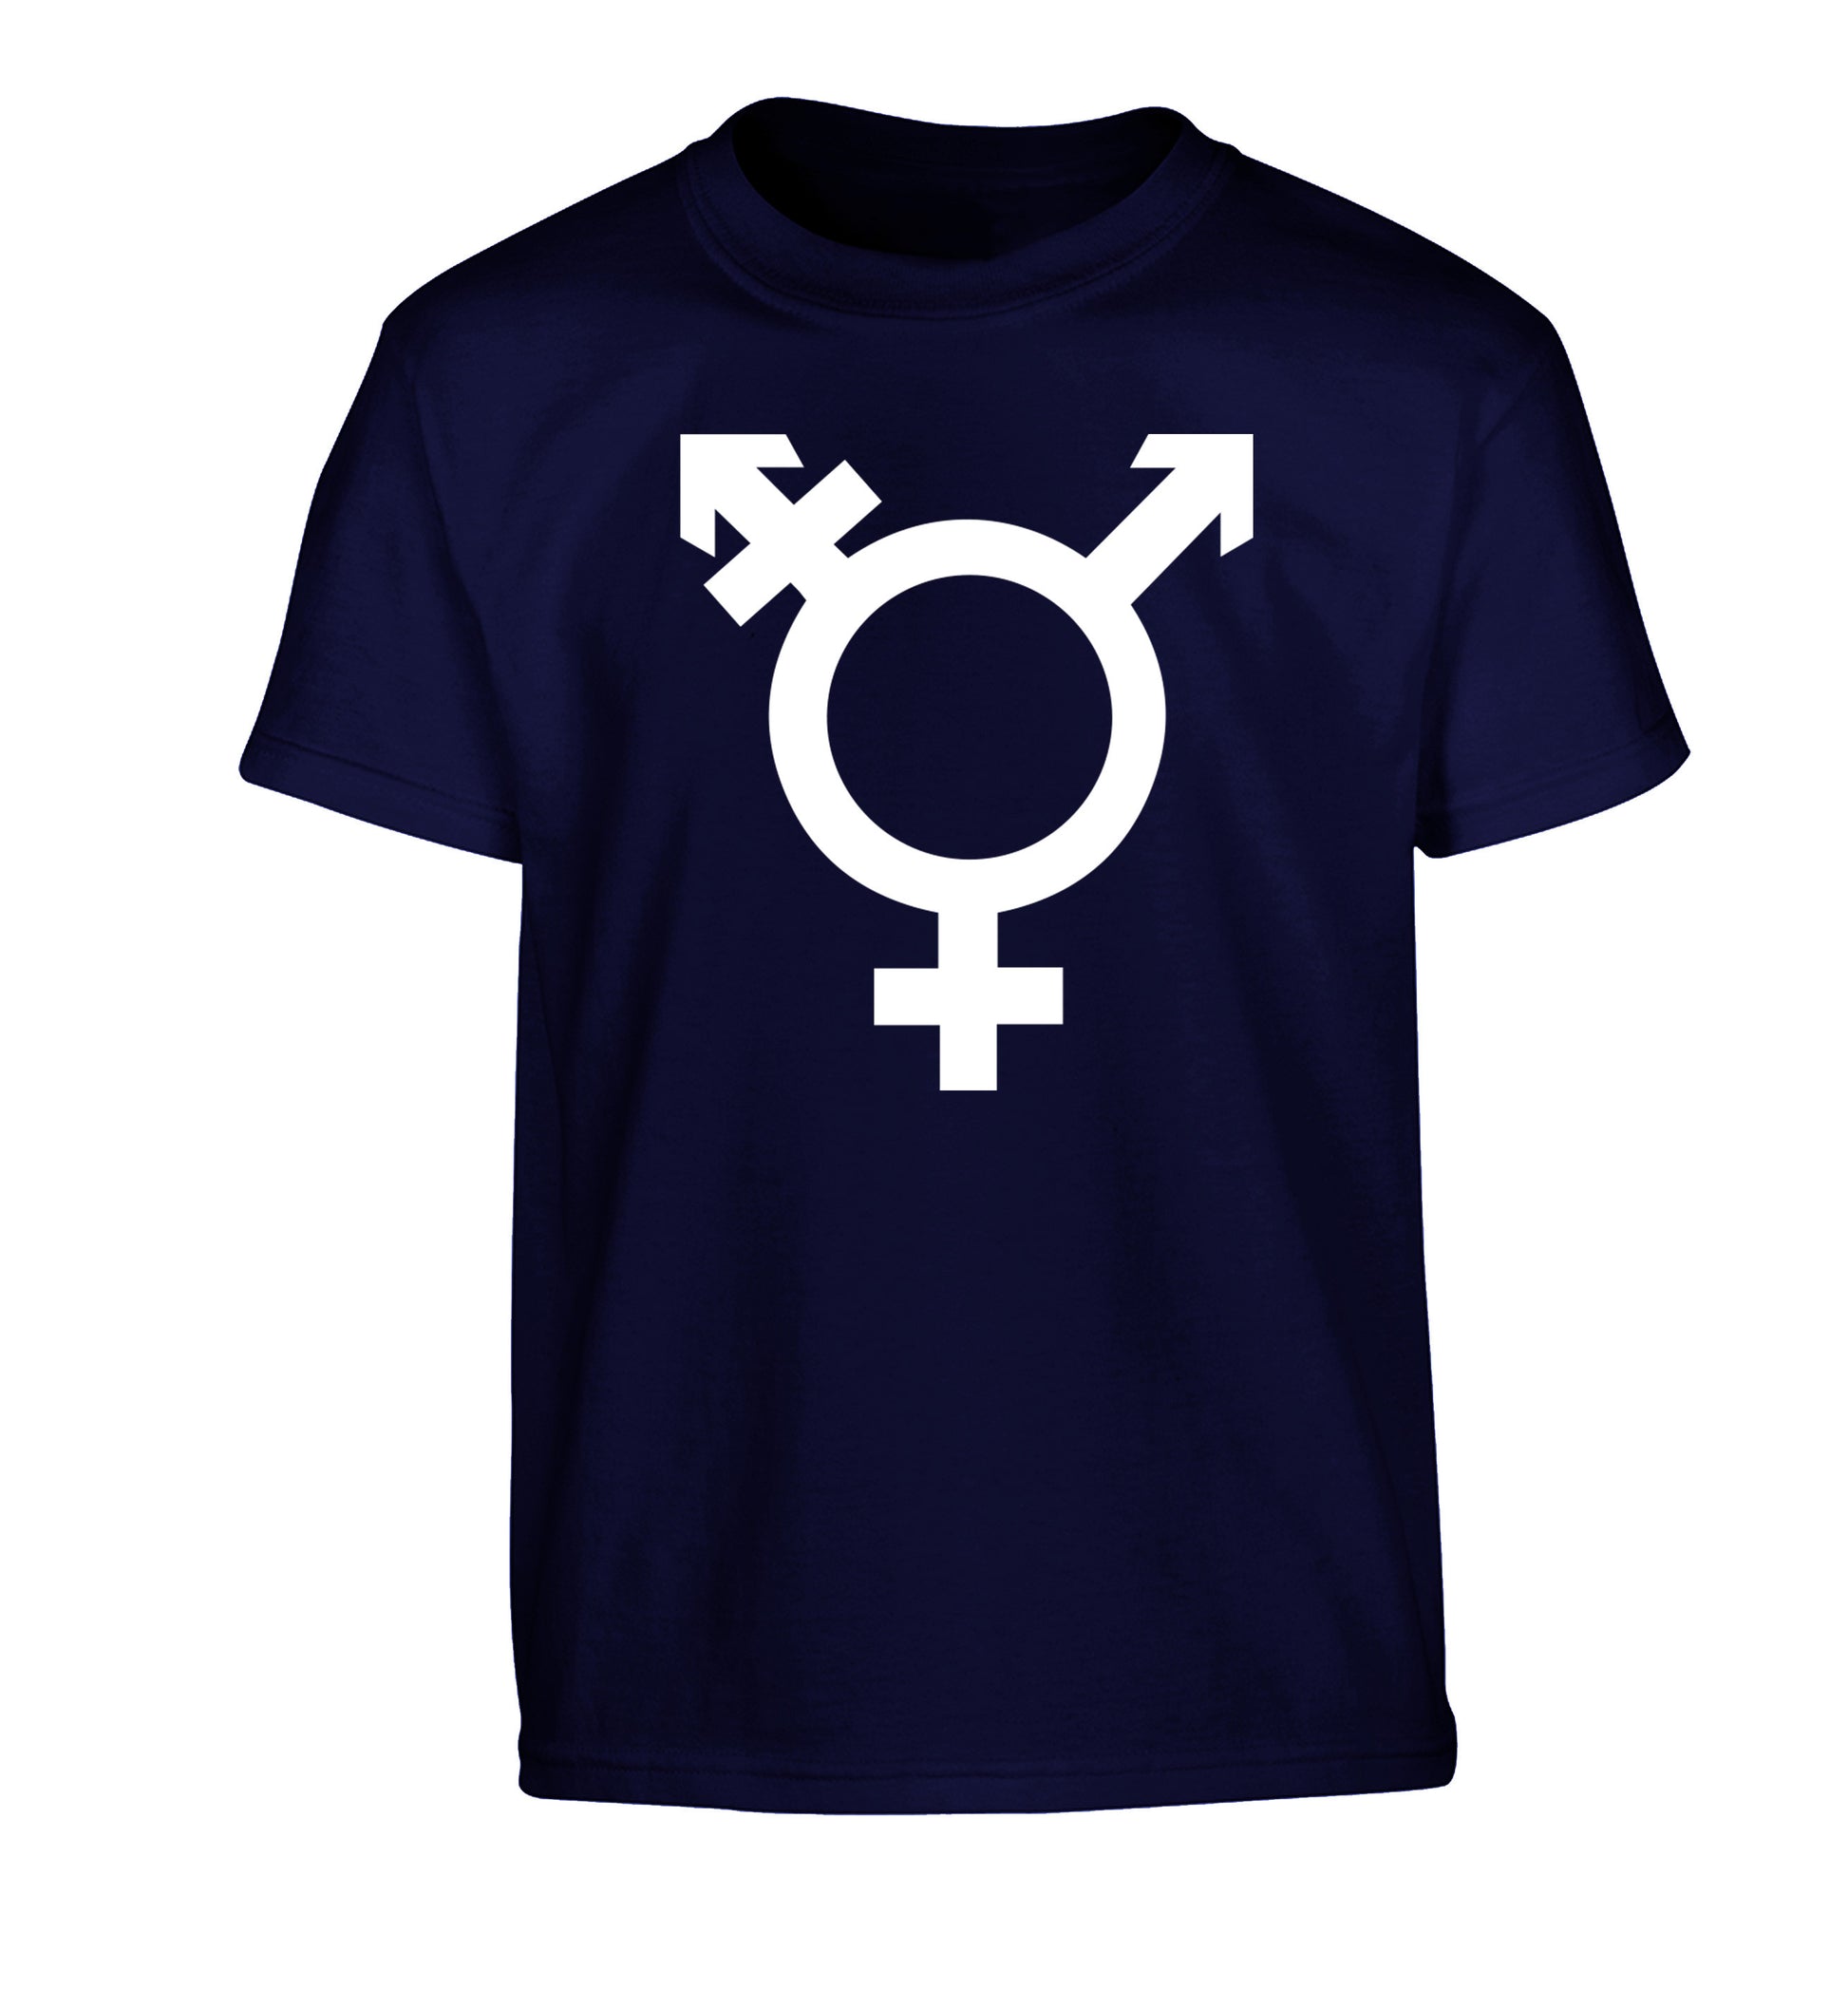 Gender neutral symbol large Children's navy Tshirt 12-14 Years